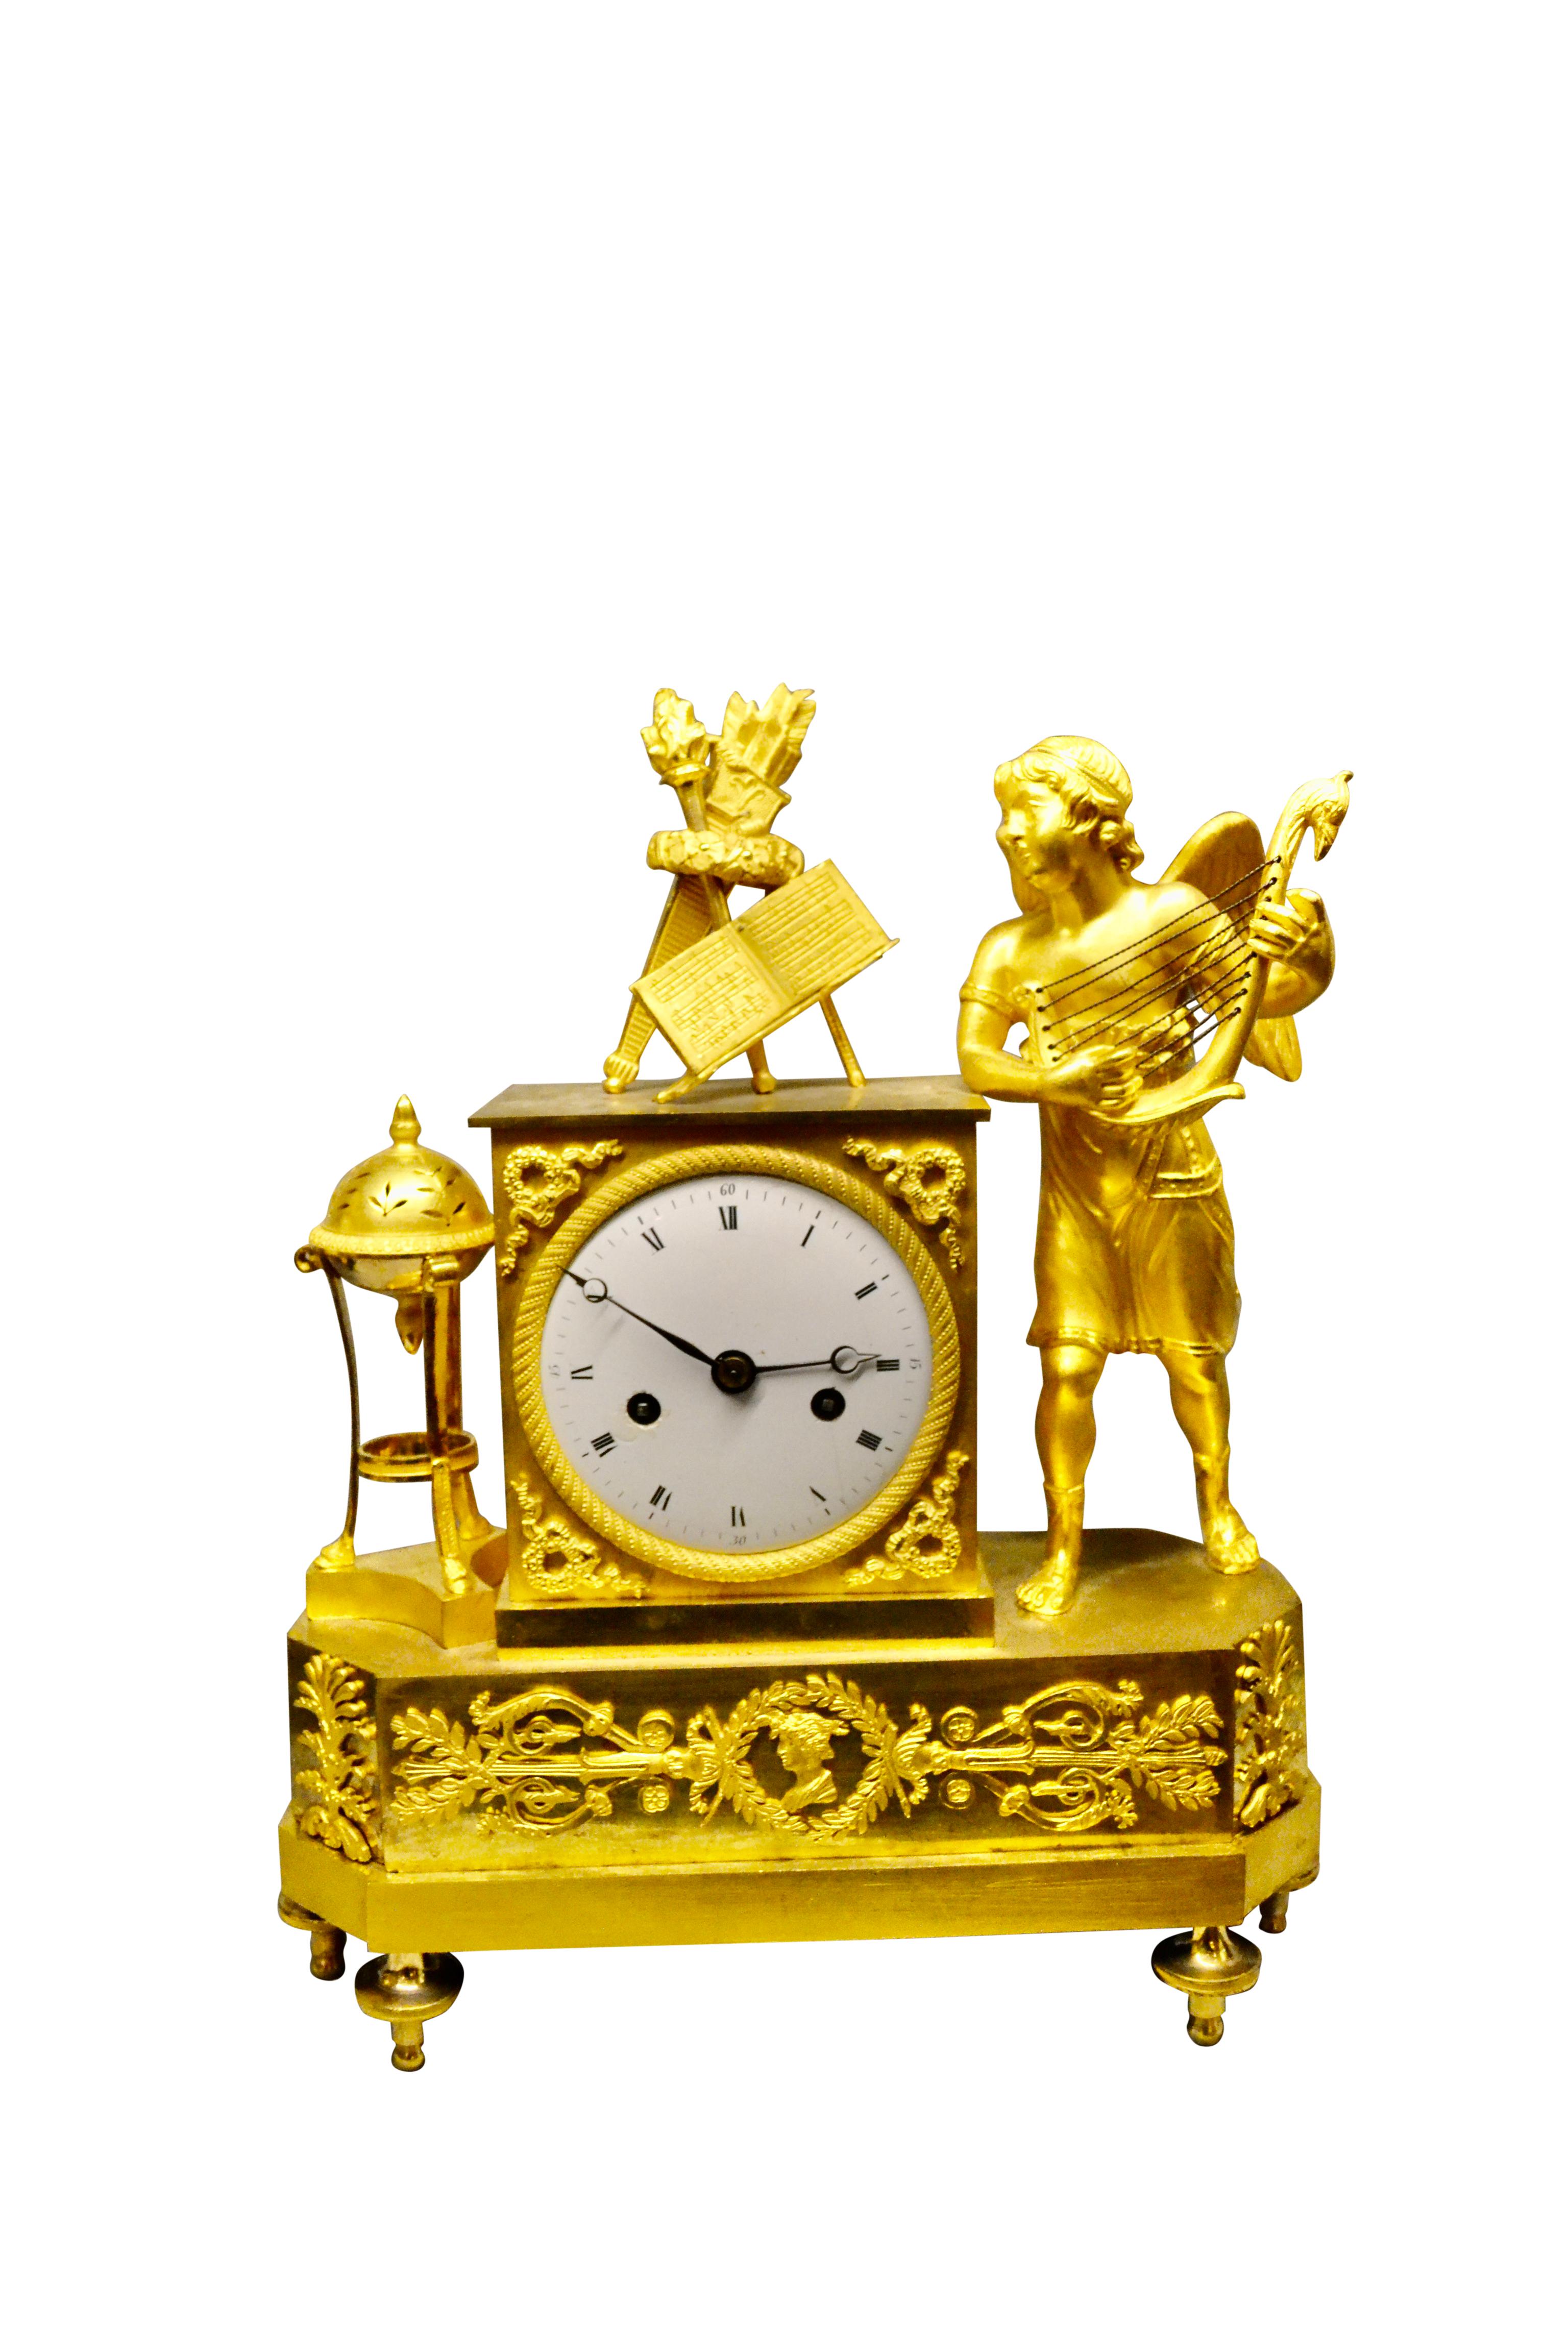 Eine hochwertige ziselierte und vergoldete französische Empire-Manteluhr, die einen stehenden geflügelten Amor auf der rechten Seite des Uhrensockels darstellt, der eine Laute spielt.  Er schaut nach rechts und liest seine Noten und andere Elemente